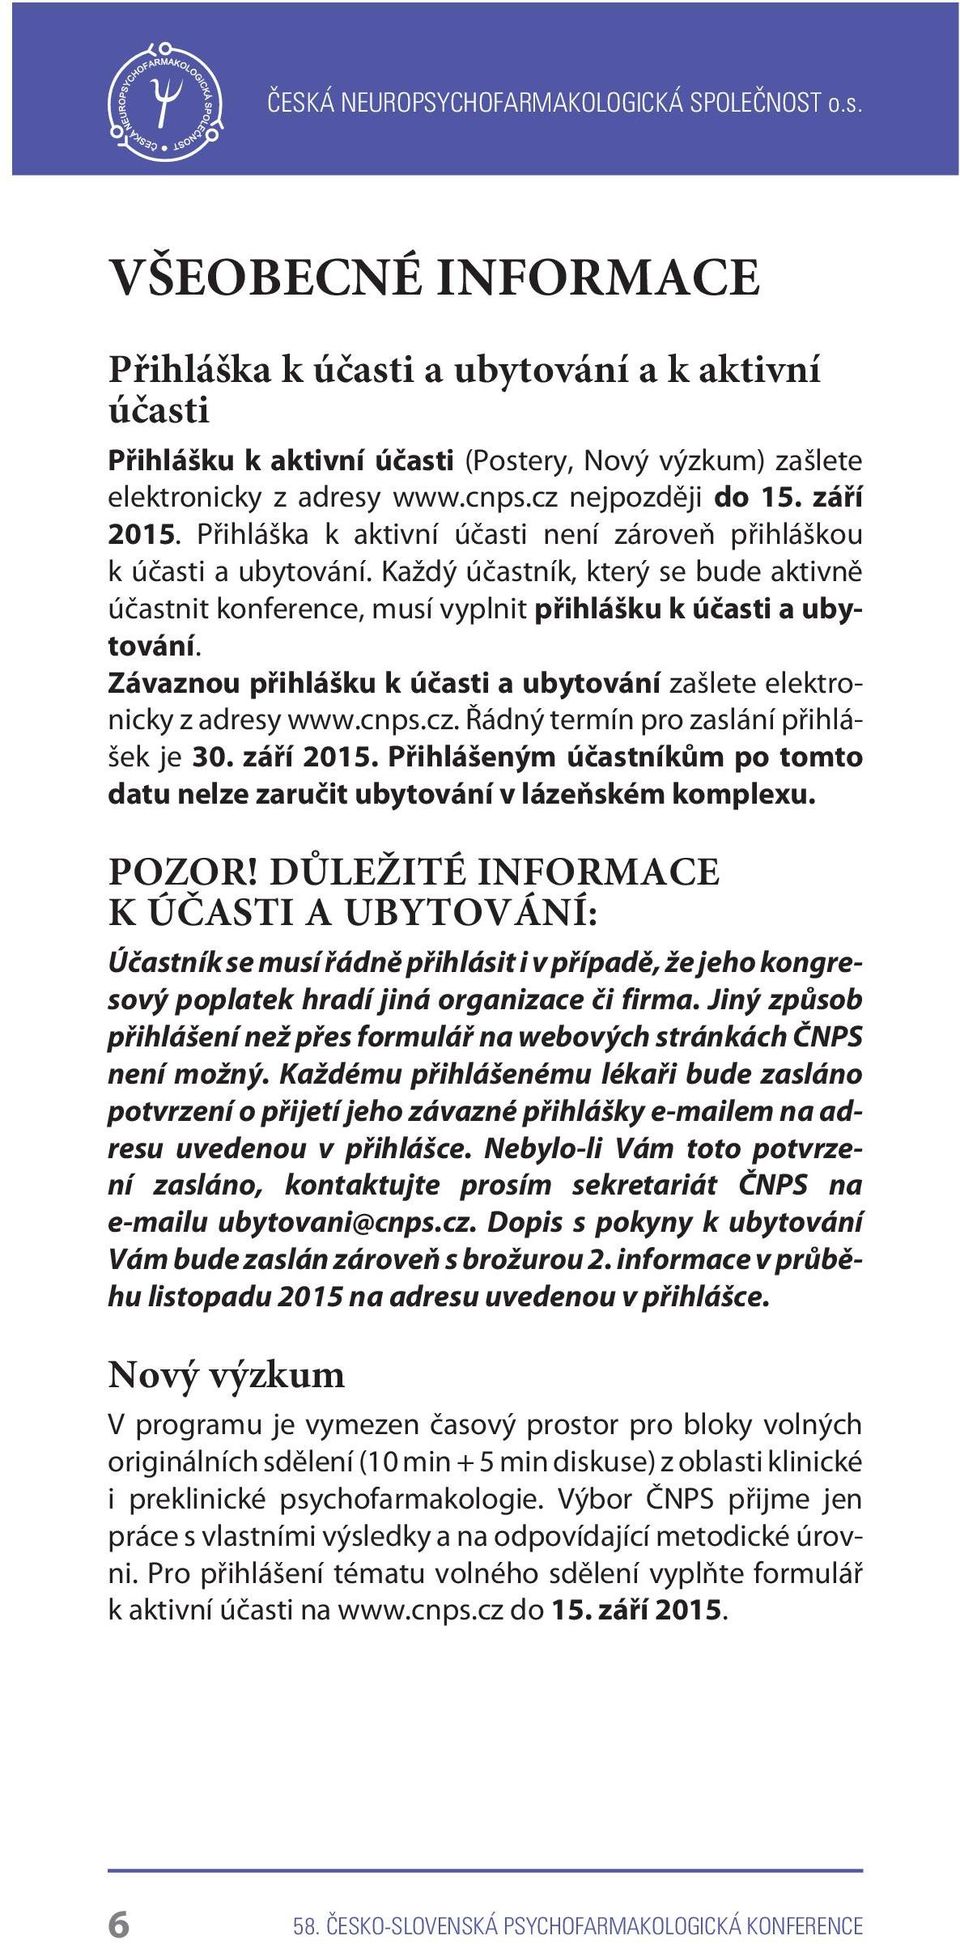 Závaznou pøihlášku k úèasti a ubytování zašlete elektronicky z adresy www.cnps.cz. Øádný termín pro zaslání pøihlášek je 30. záøí 2015.